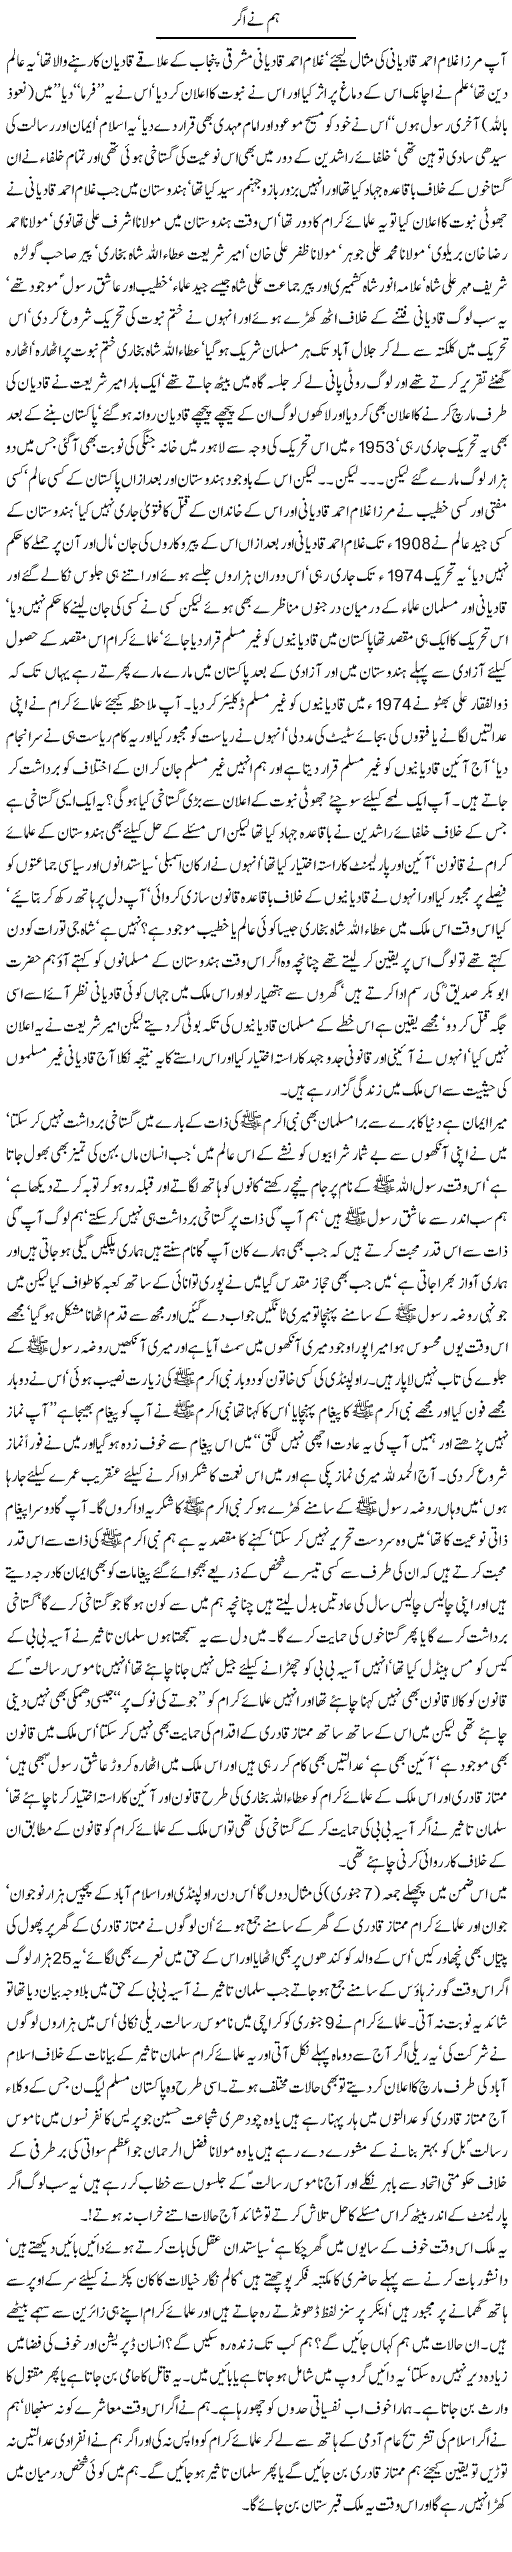 Mirza Qadiani Express Column Javed Chaudhry 13 January 2011